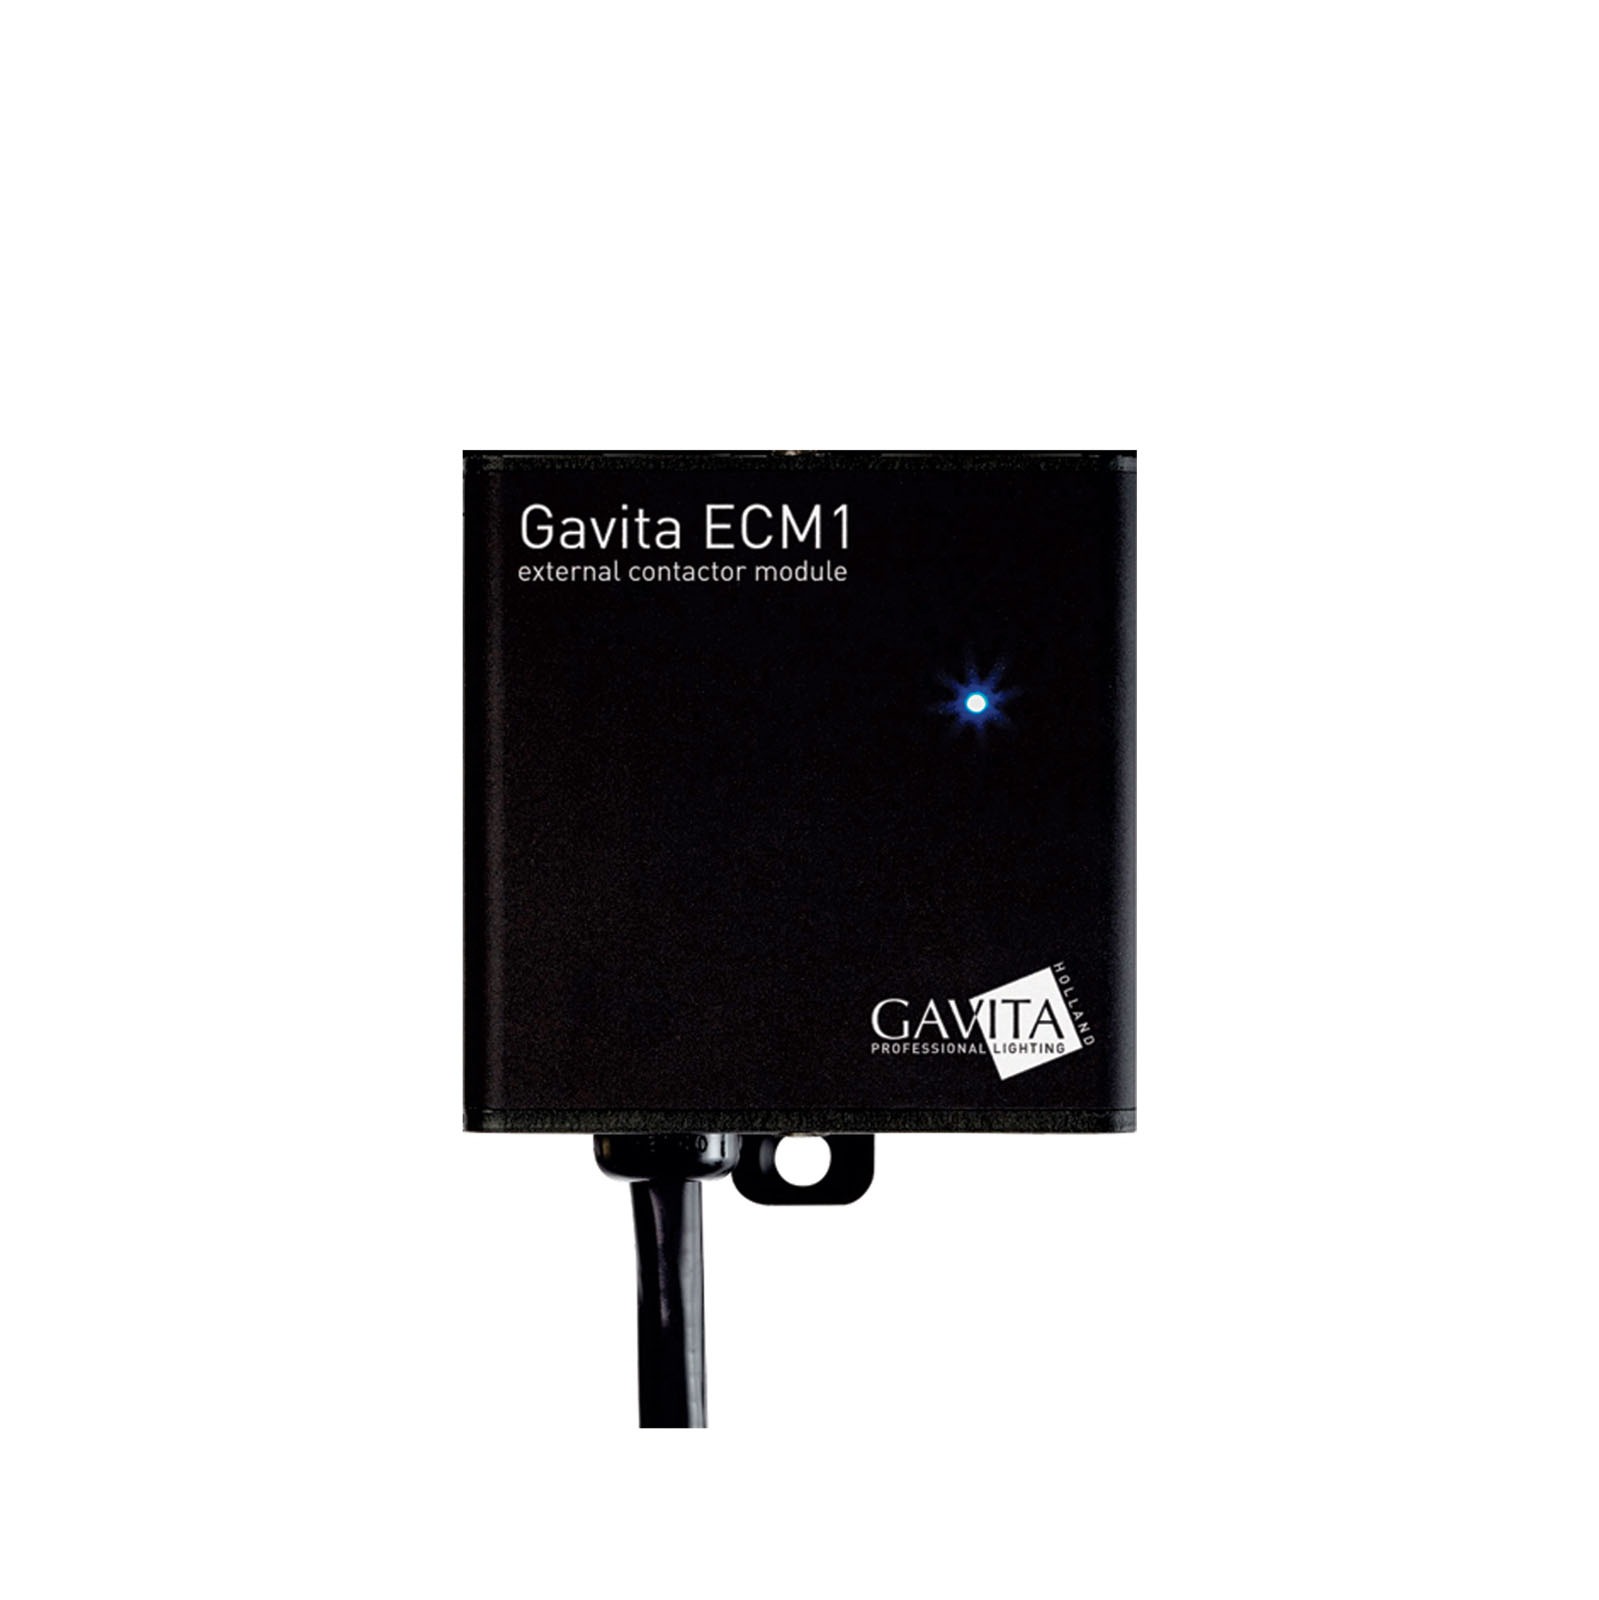 Gavita External Contactor Module ECM1